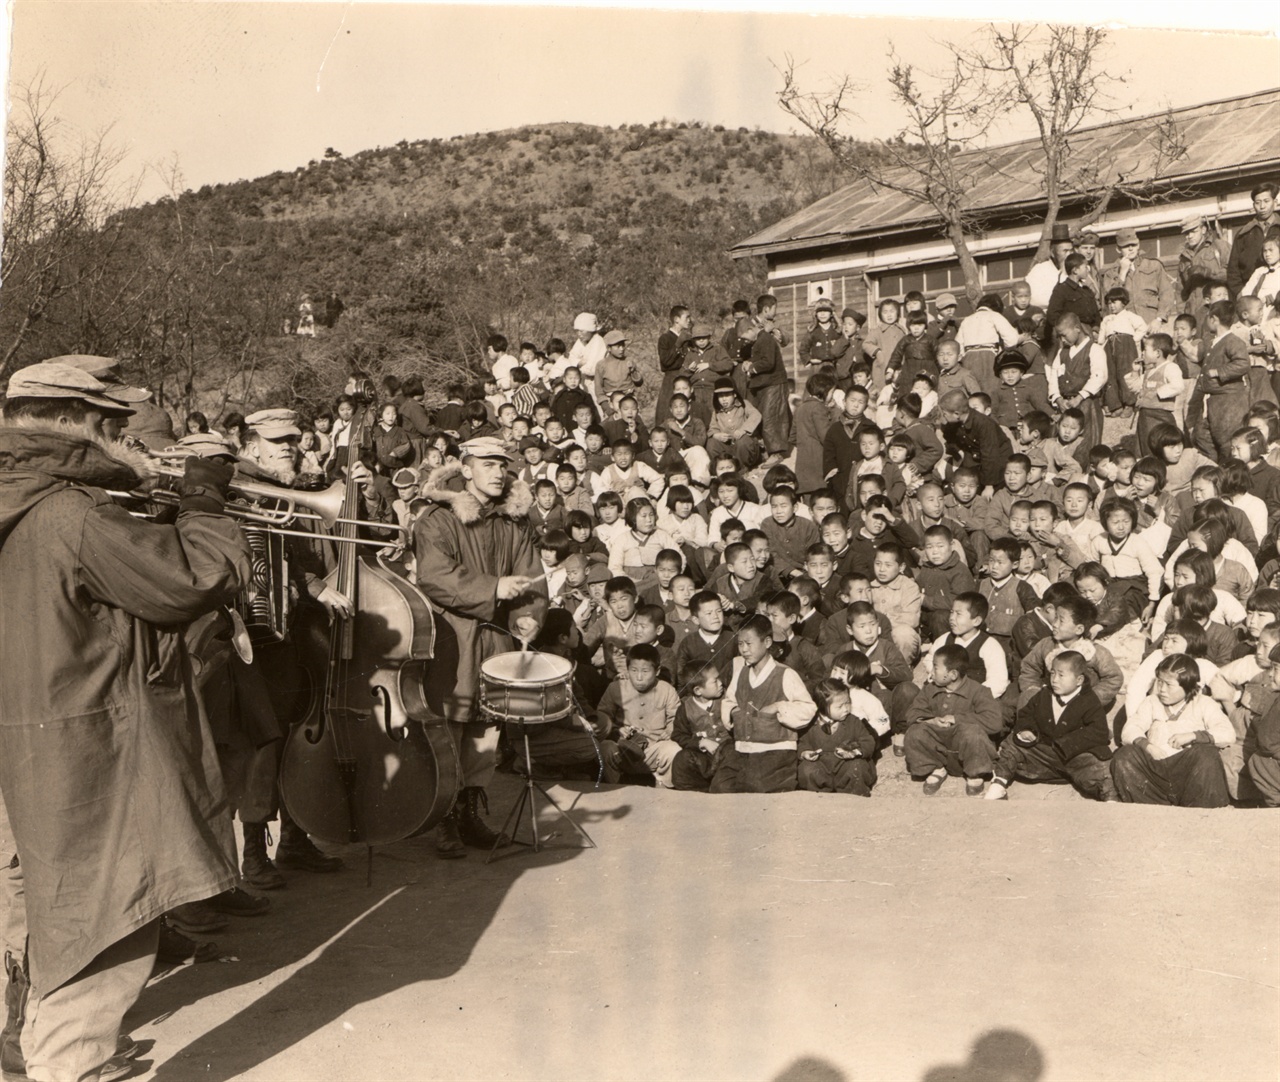 1952. 12. 24. 미 해병대원들이 크리스마스이브를 맞아 김포의 한 학교에서 학생과 주민들을 위해 세레나데(소야곡)을 연주하고 있다. 